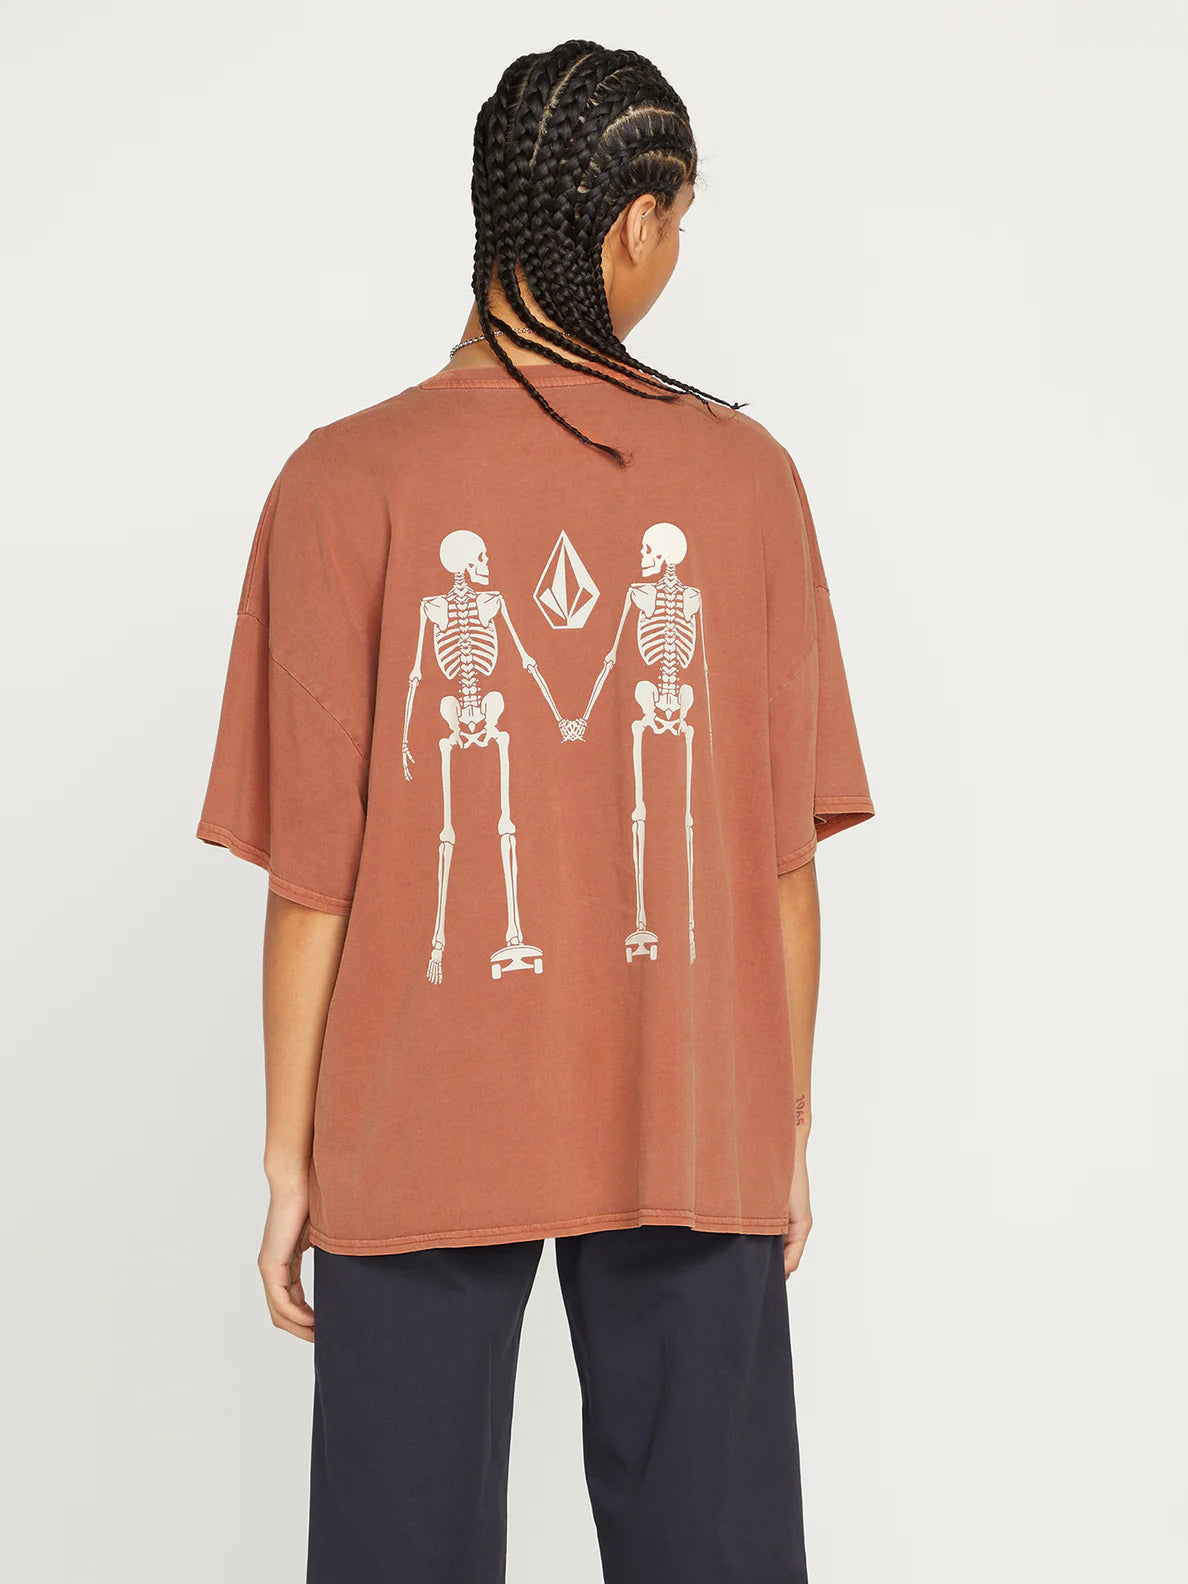 Camiseta Chica Volcom My Guys - Dark Clay | Camisetas de hombre | Camisetas manga corta de hombre | Volcom Shop | surfdevils.com